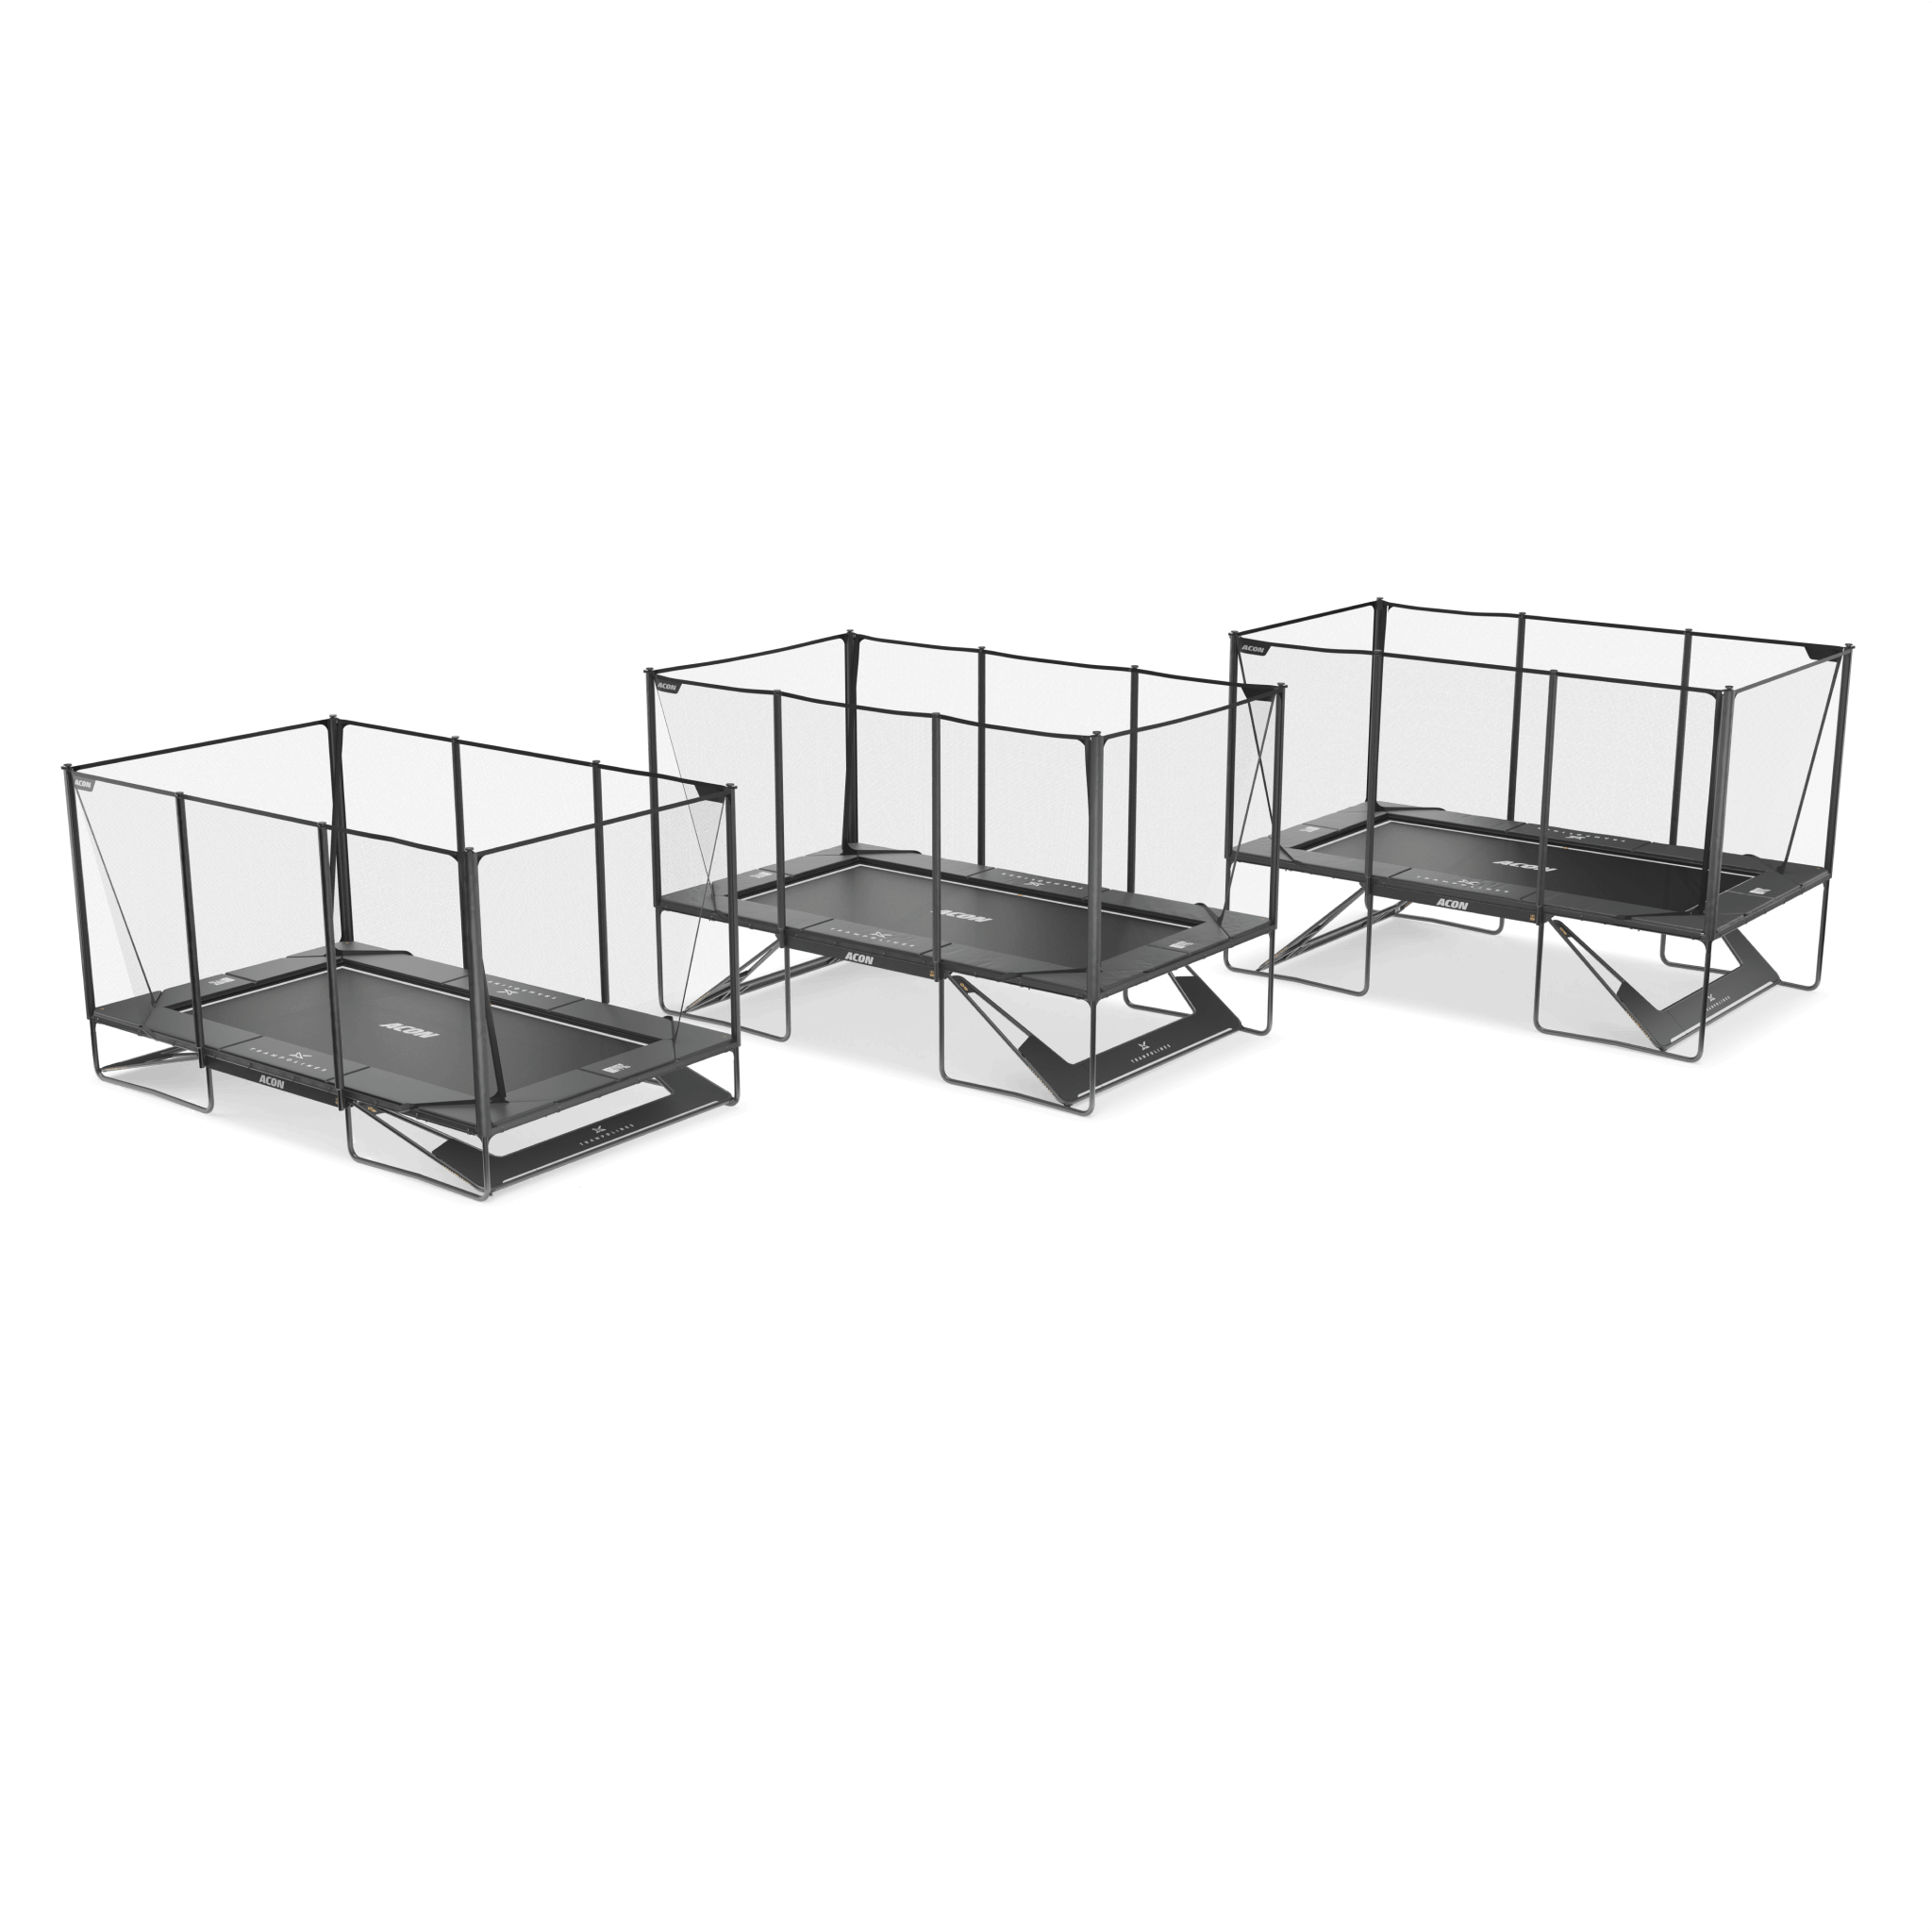 Kolme Acon X -trampoliinia asennettuna eri korkeuksiin korotussetin avulla, ylhäältä katsottuna.